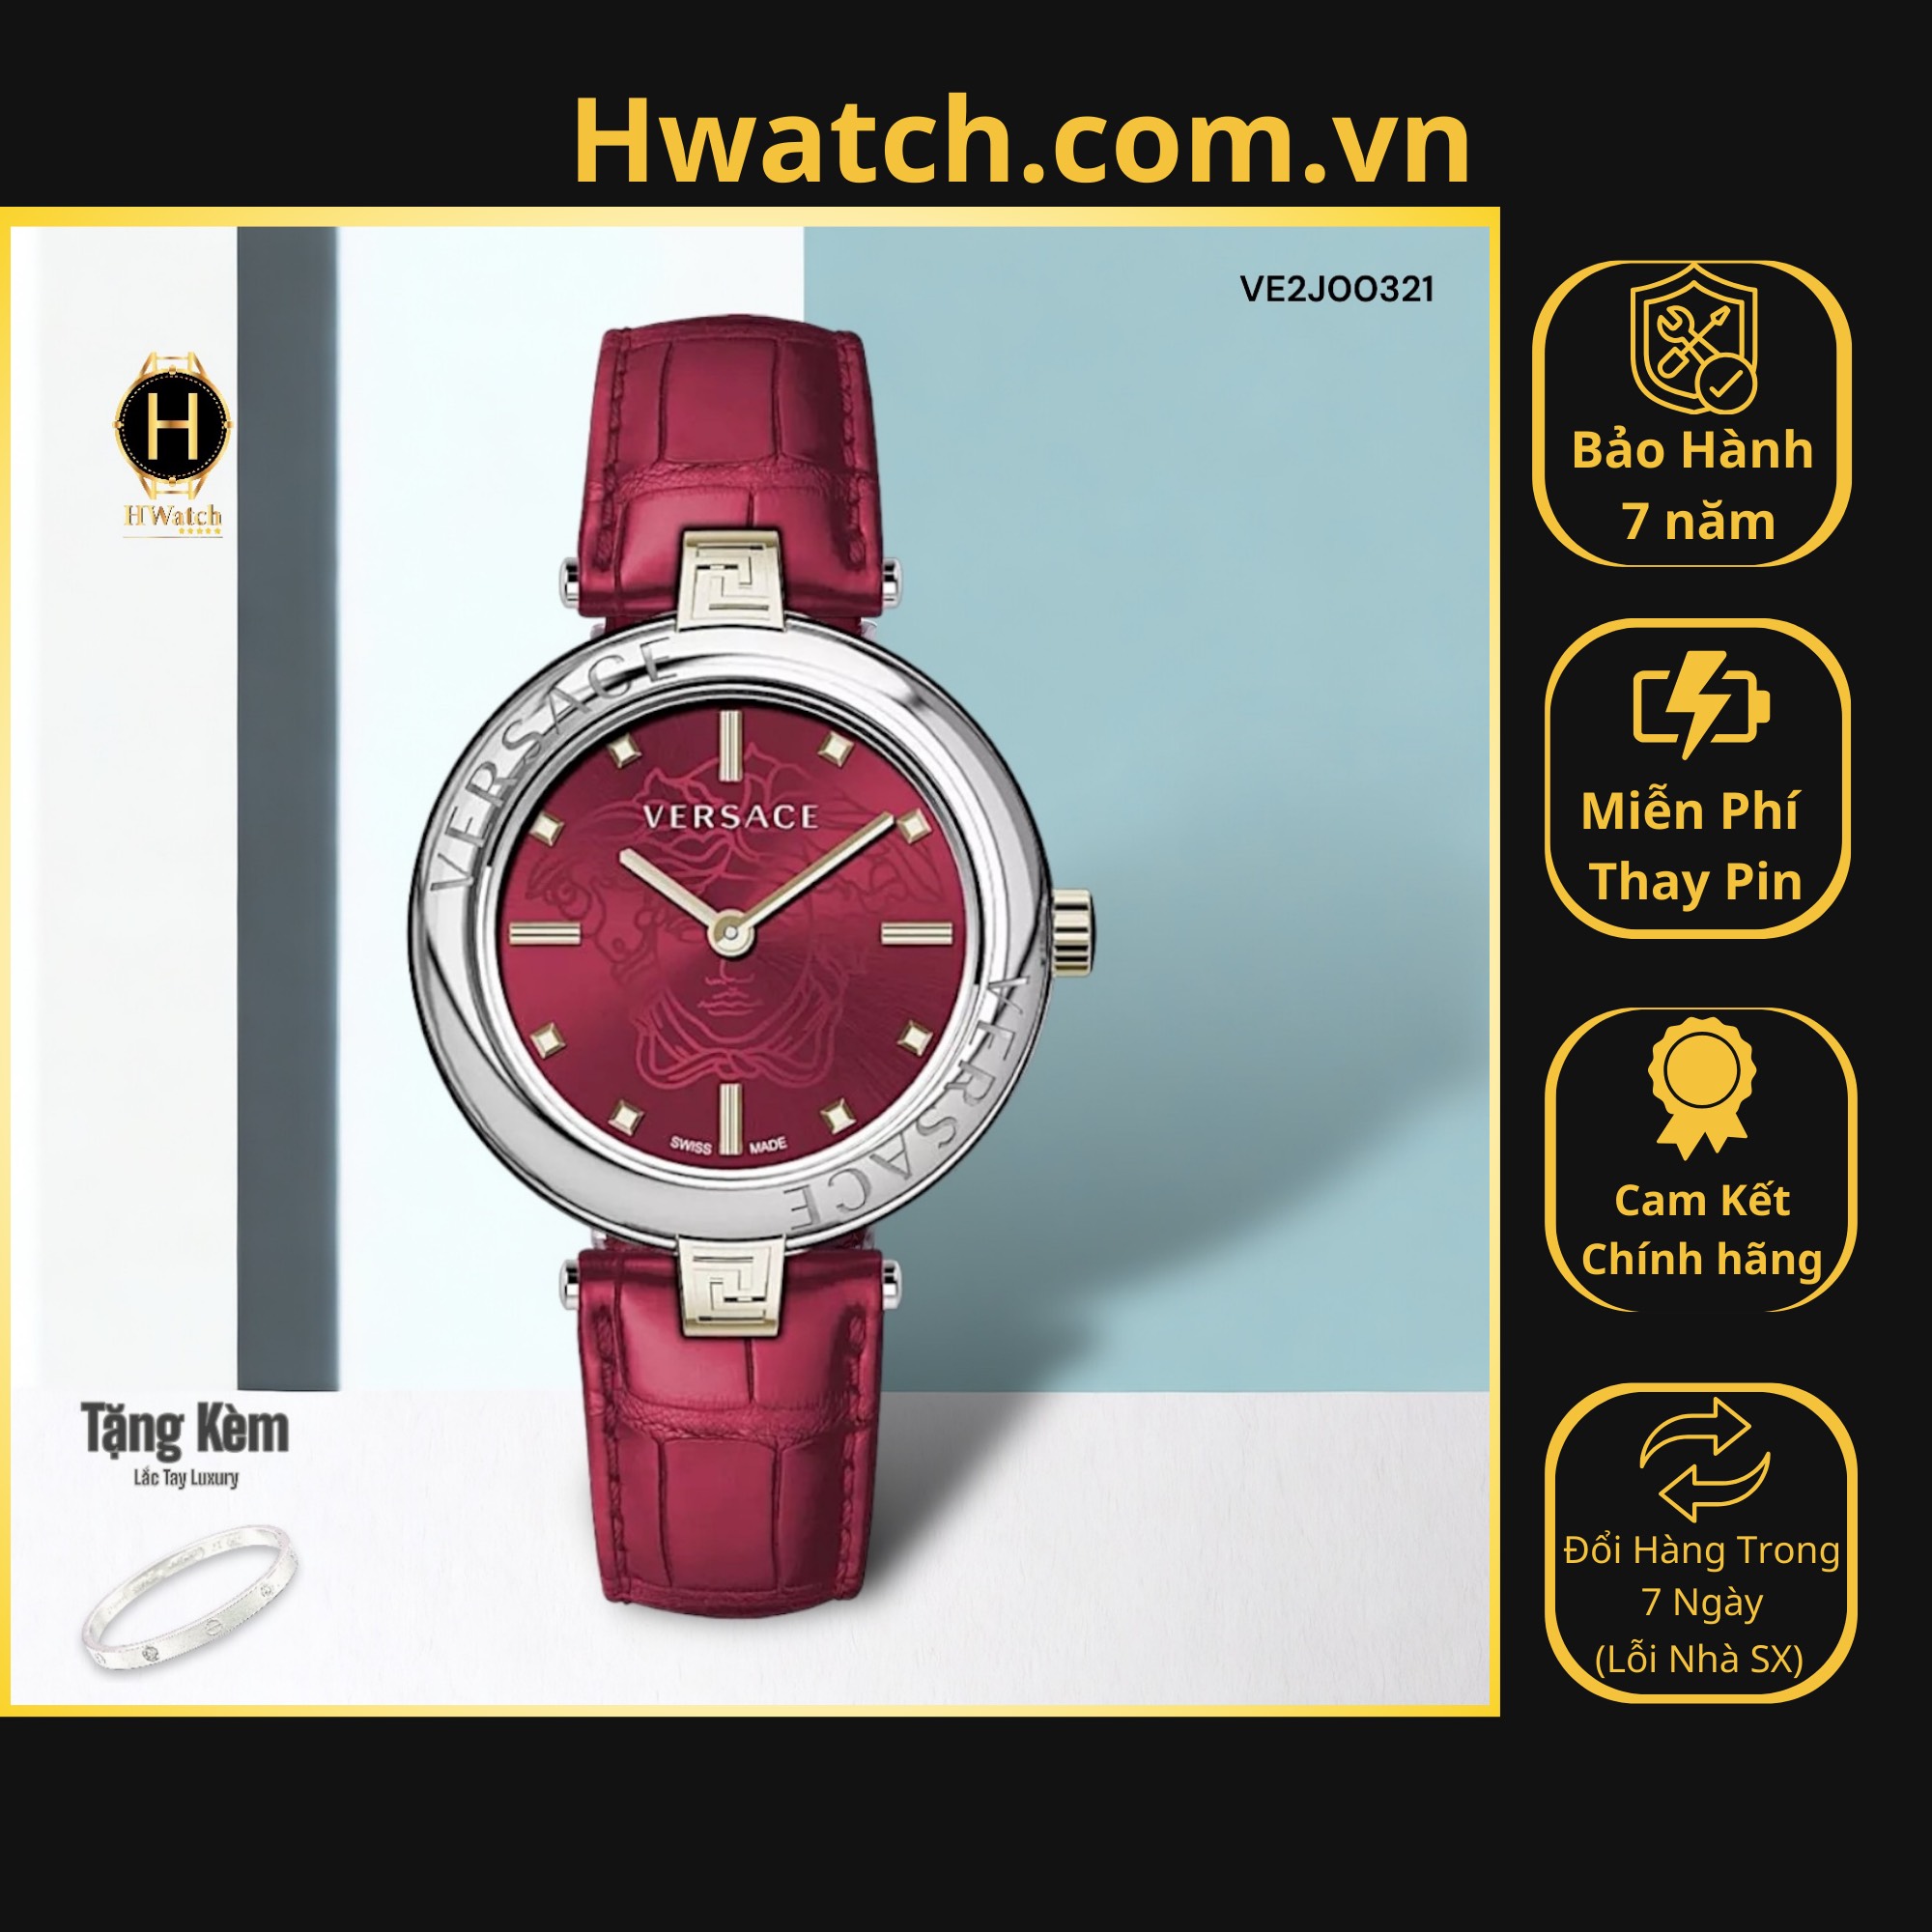 [Có sẵn] [Chính hãng] Đồng Hồ Nữ Versace Pin VE2J00321 New Lady Watch Hwatch.com.vn